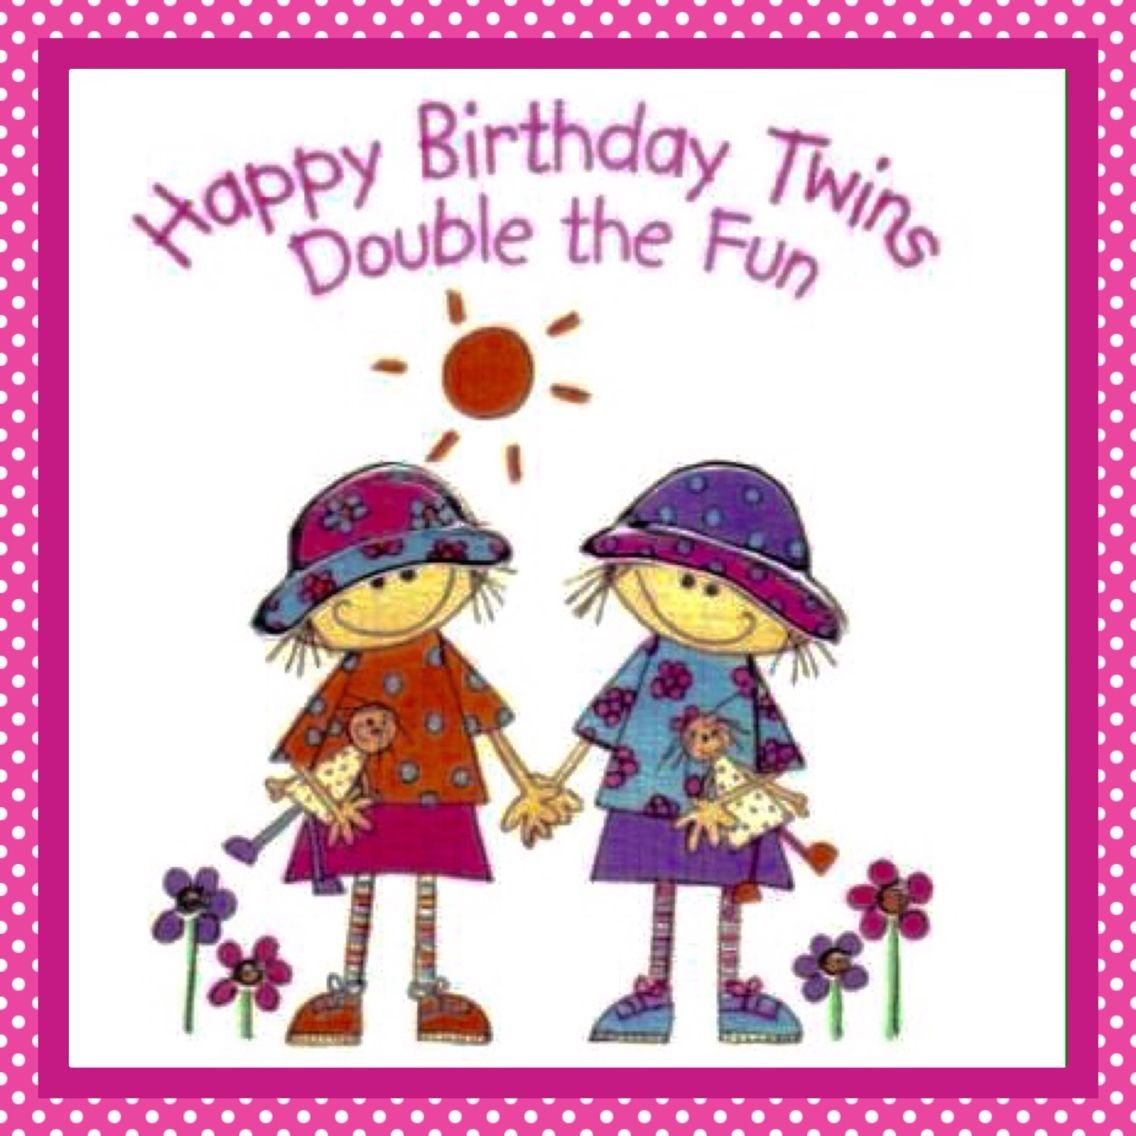 С днем рождения сестрам близняшкам. С дне рождения двойняшек. С днем рожден ядвойняшек. Открытка близнецам с днем рождения. С днёмрожденияблизняшек.